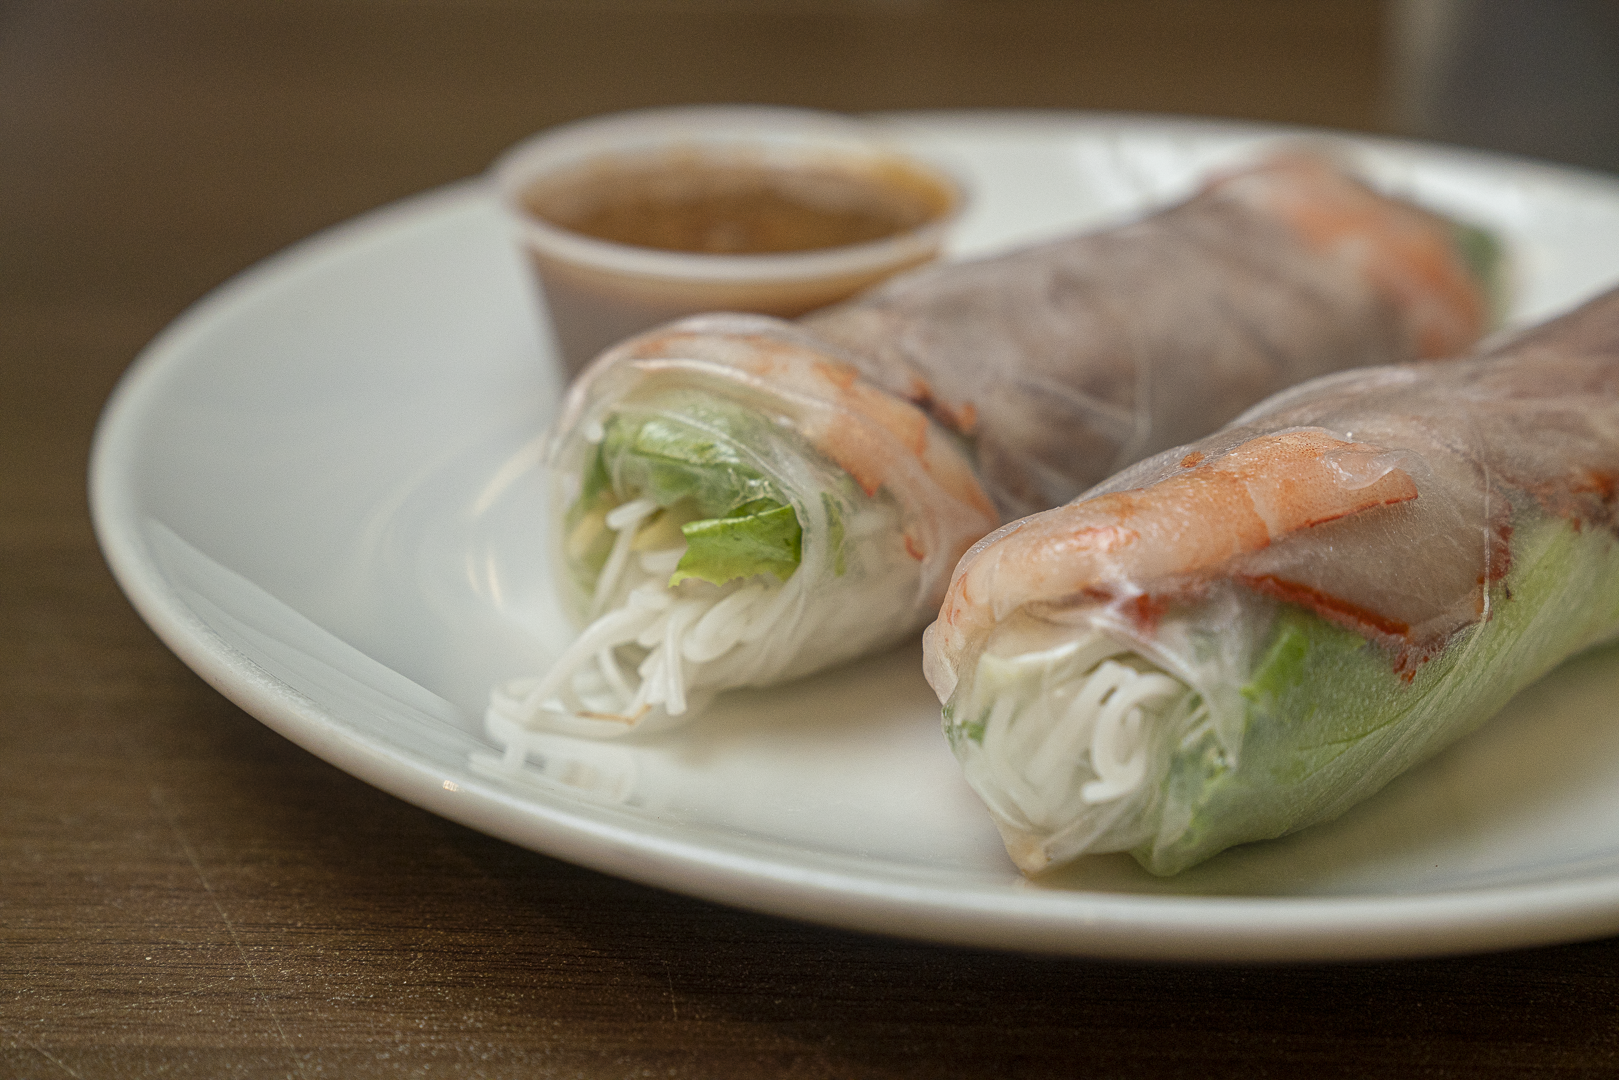 Gỏi cuốn (Spring roll: Pork, shrimp, vegetable)